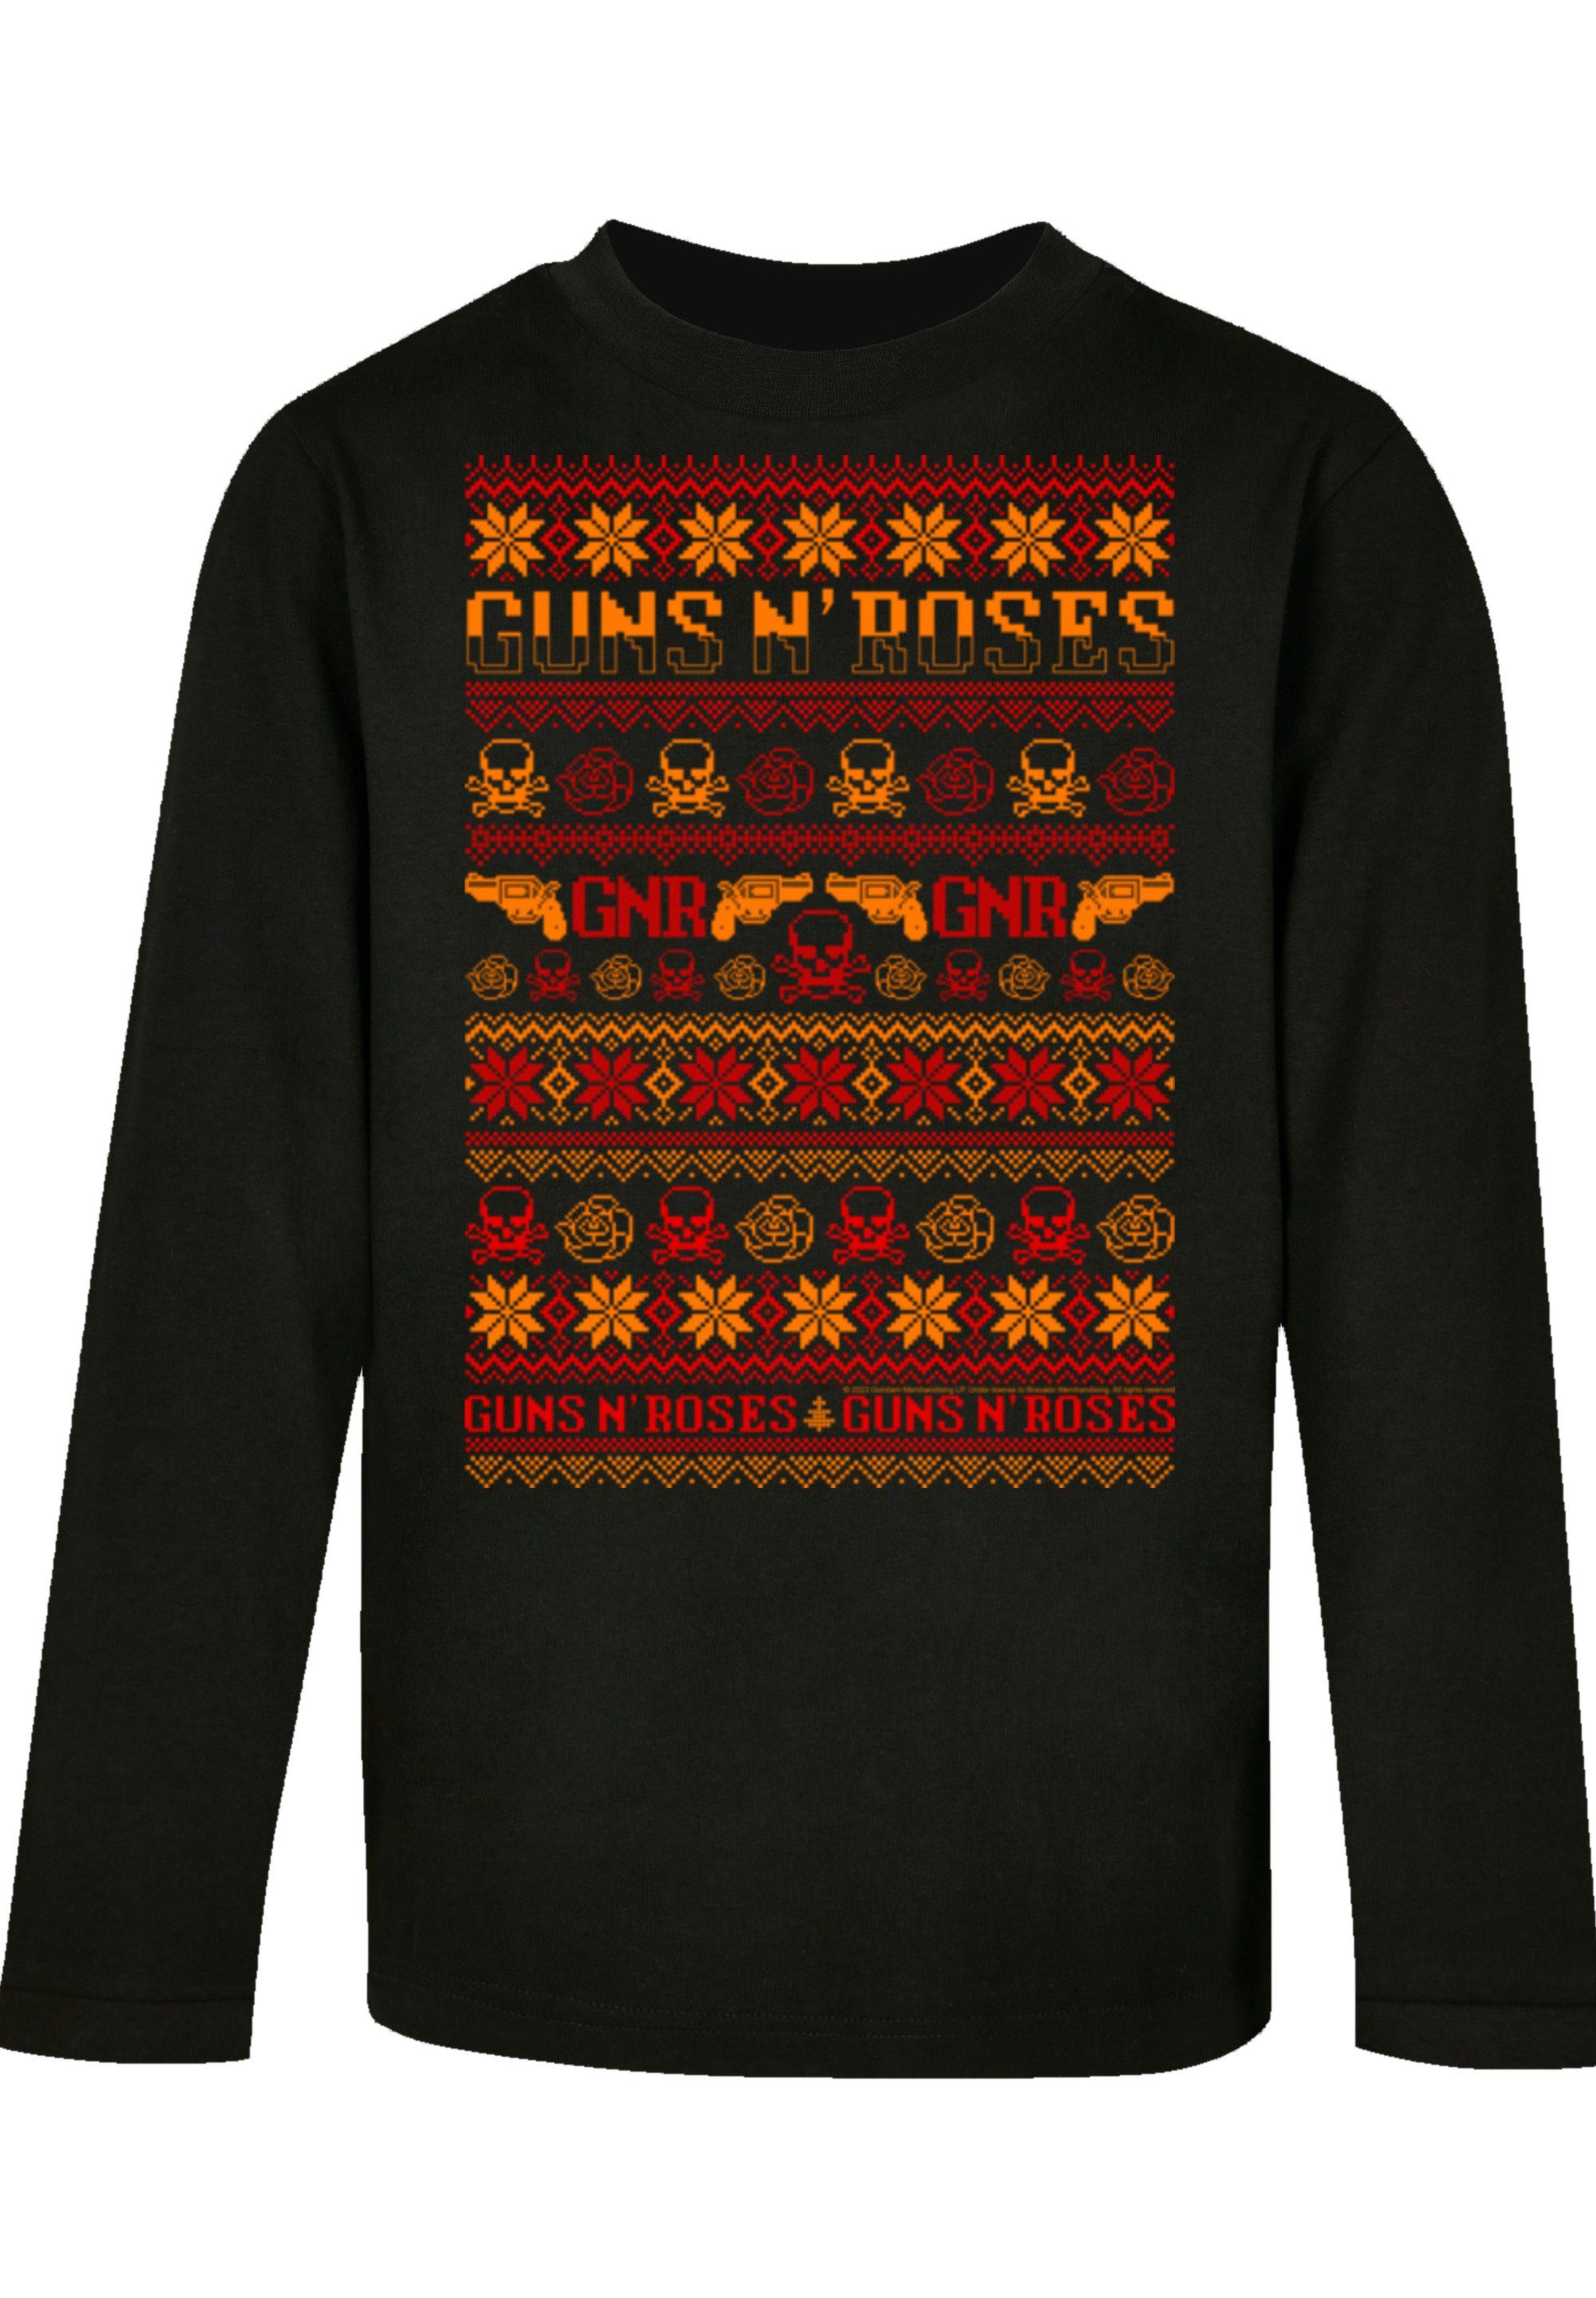 F4NT4STIC T-Shirt Guns schwarz Musik,Band,Logo Roses Christmas n' Weihnachten